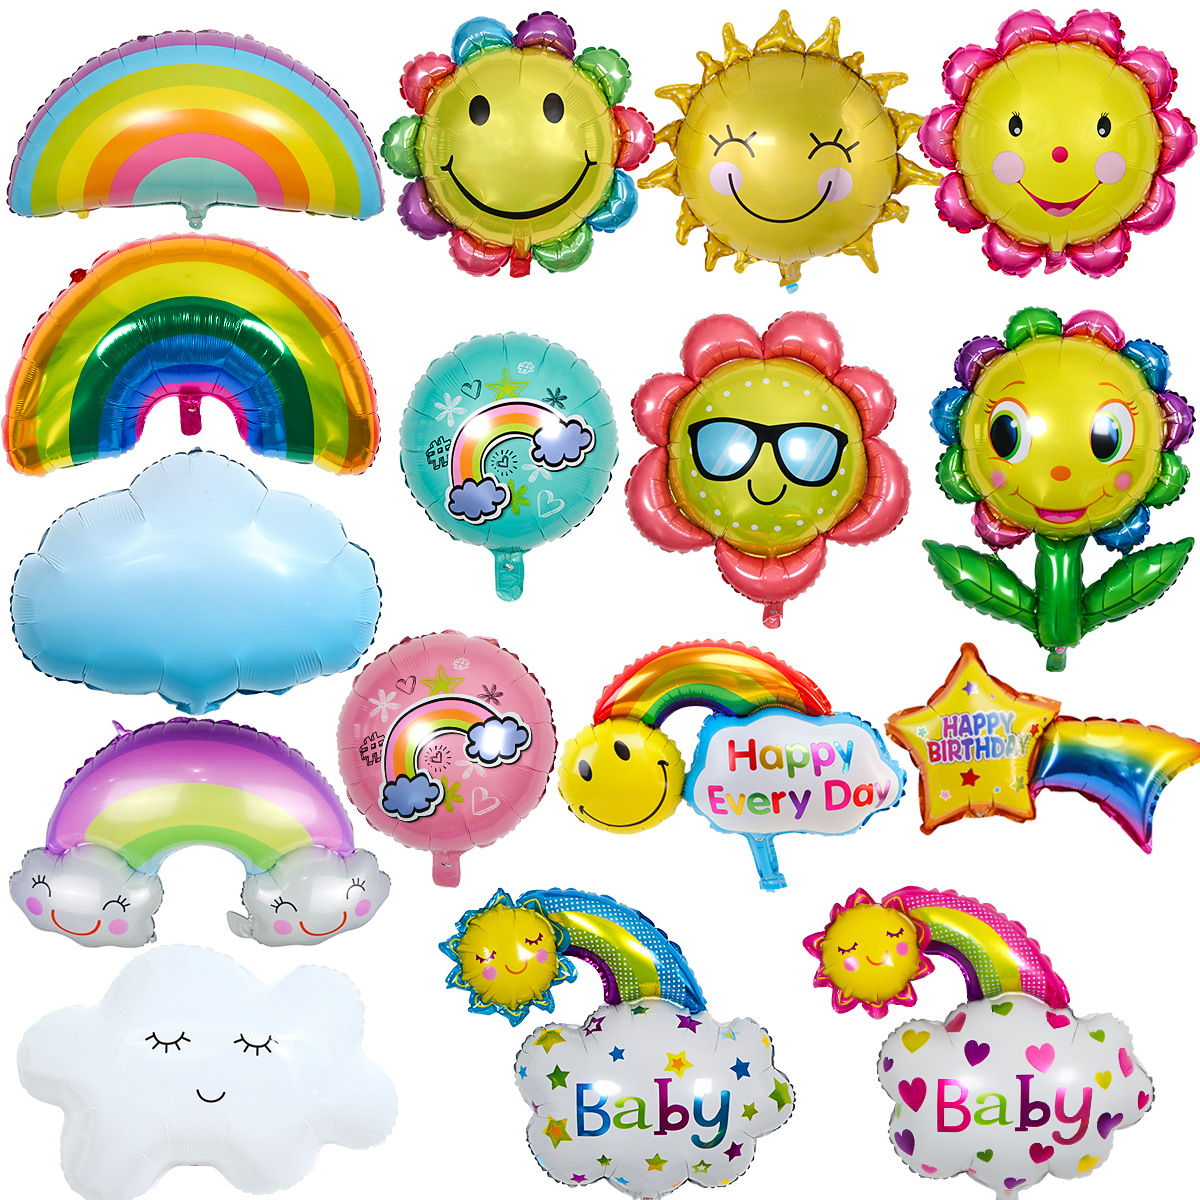 铝膜气球装饰生日太阳花云朵聚会派对场景布置彩虹太阳花气球